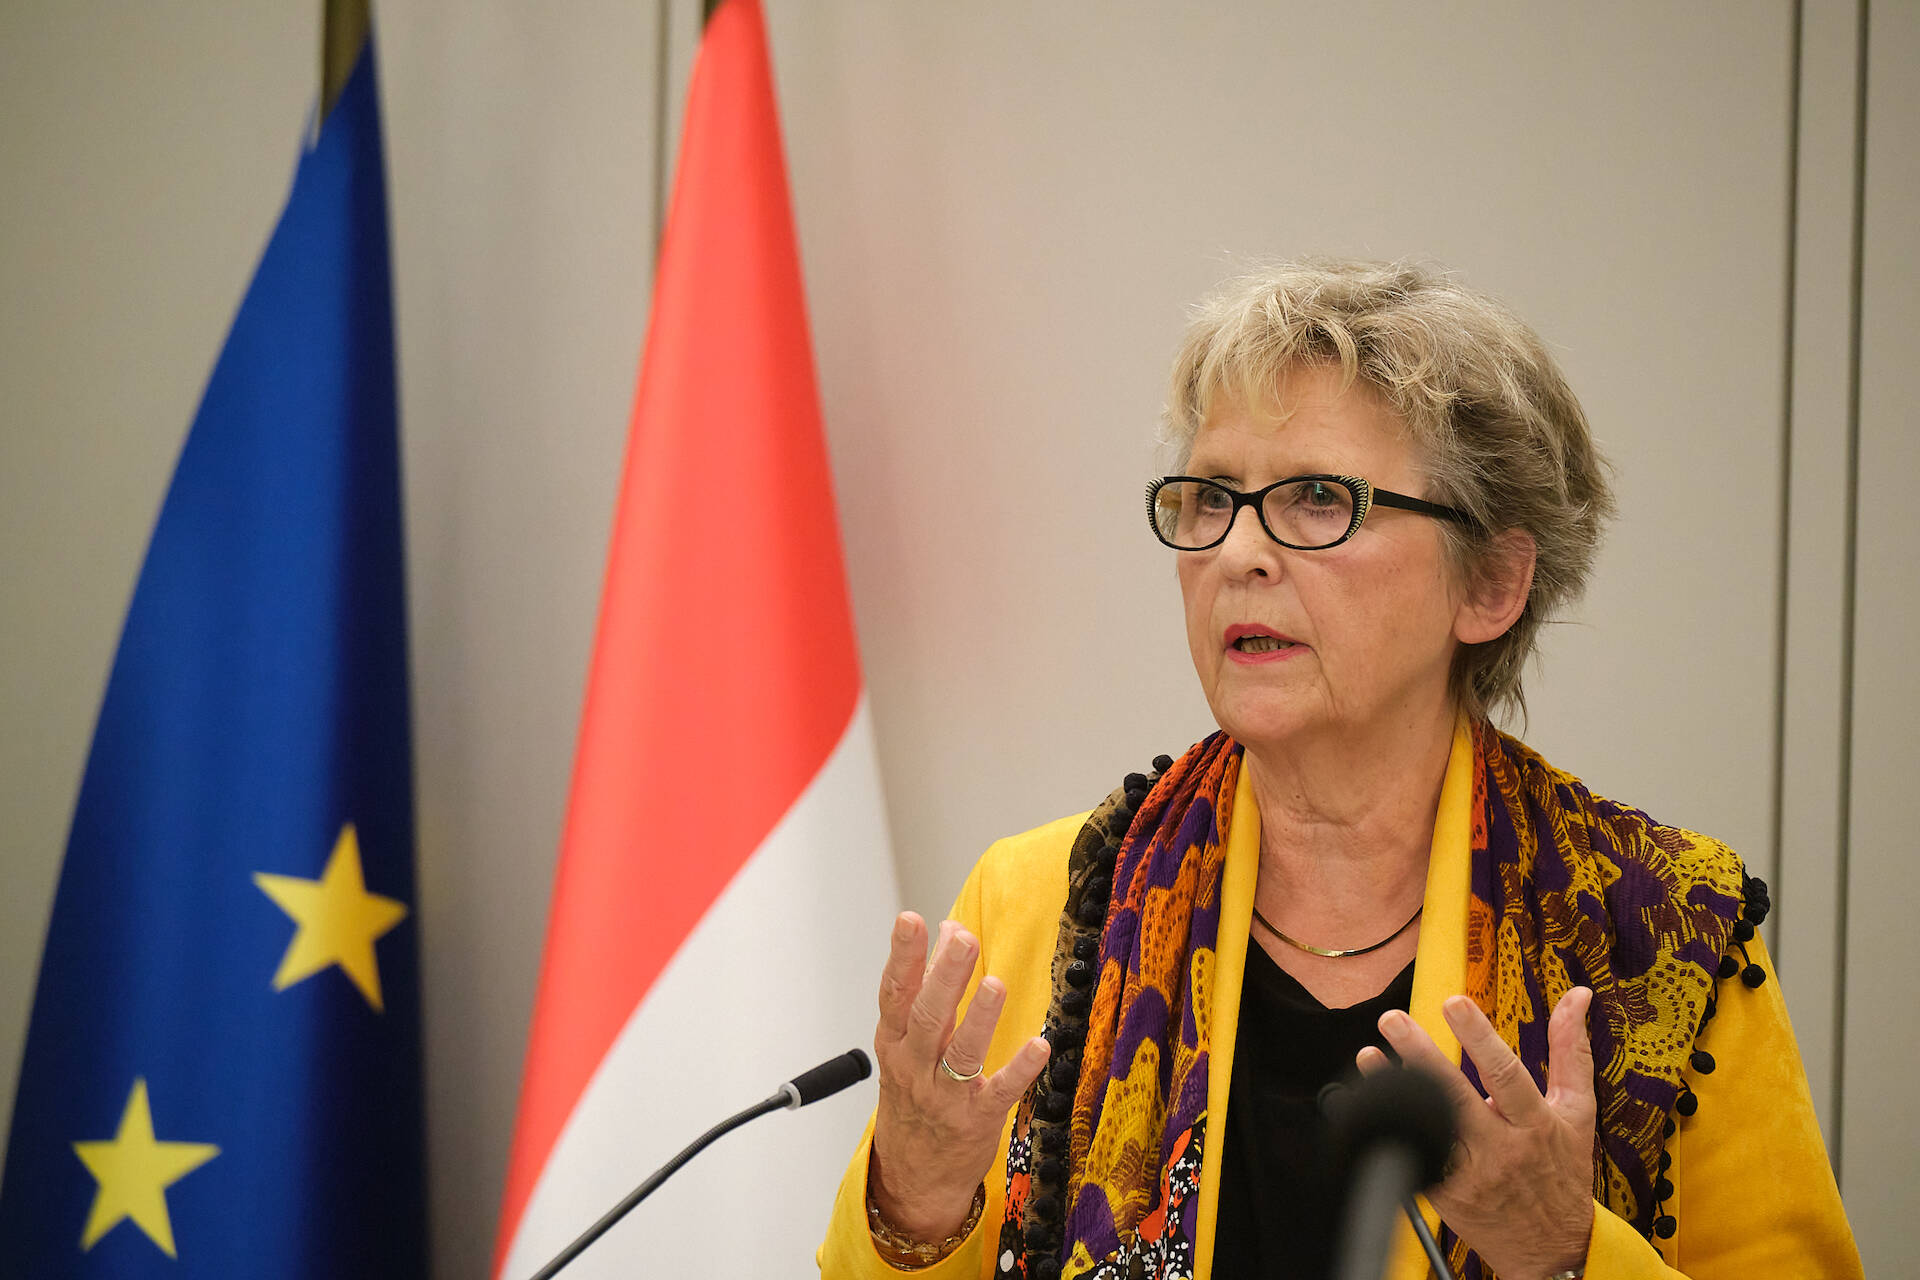 Senator De Bruijn-Wezeman (VVD)